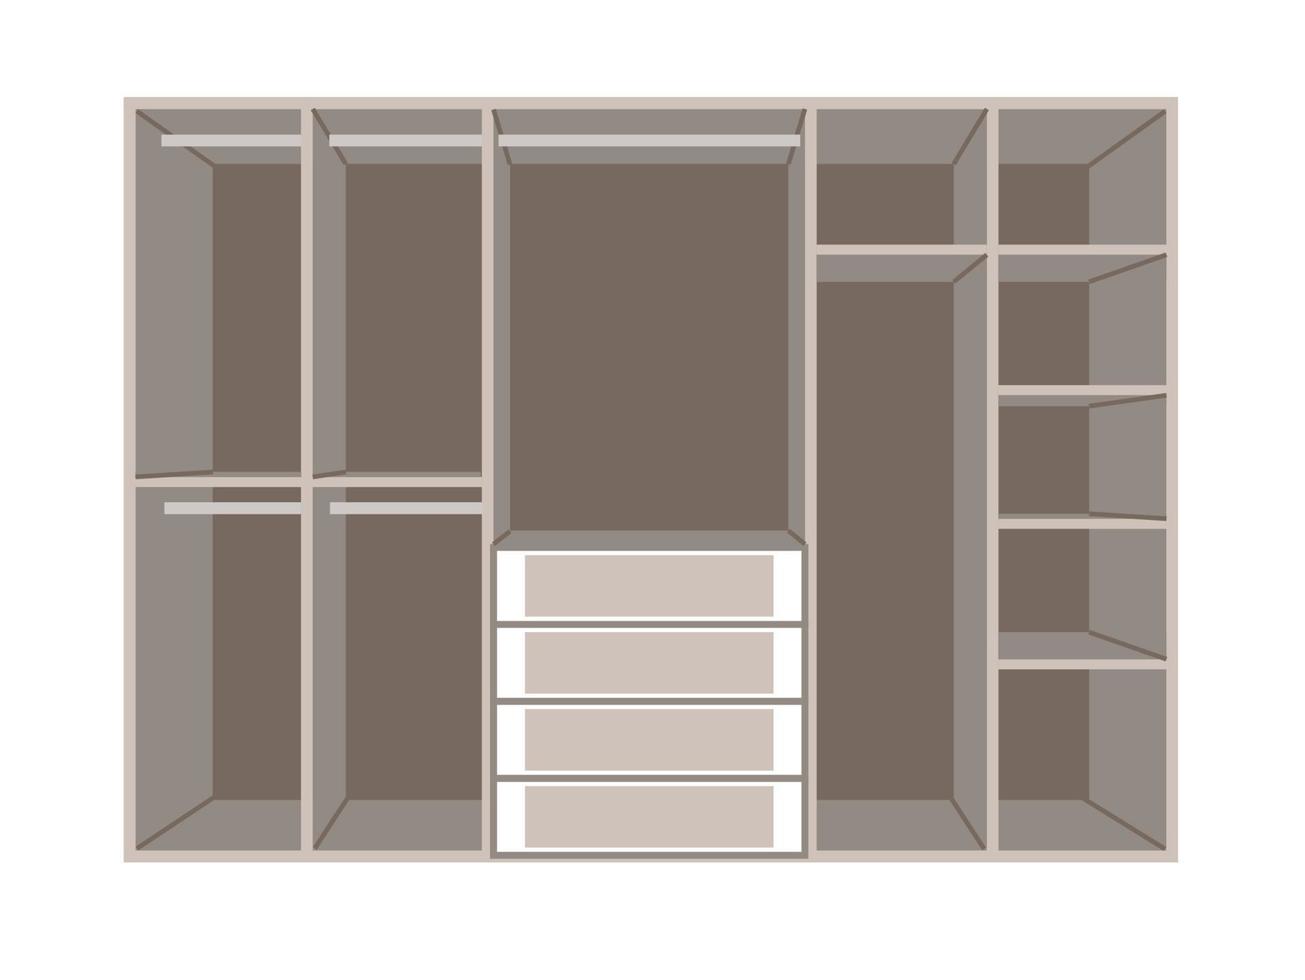 Armario abierto y de armario aislado sobre fondo blanco.